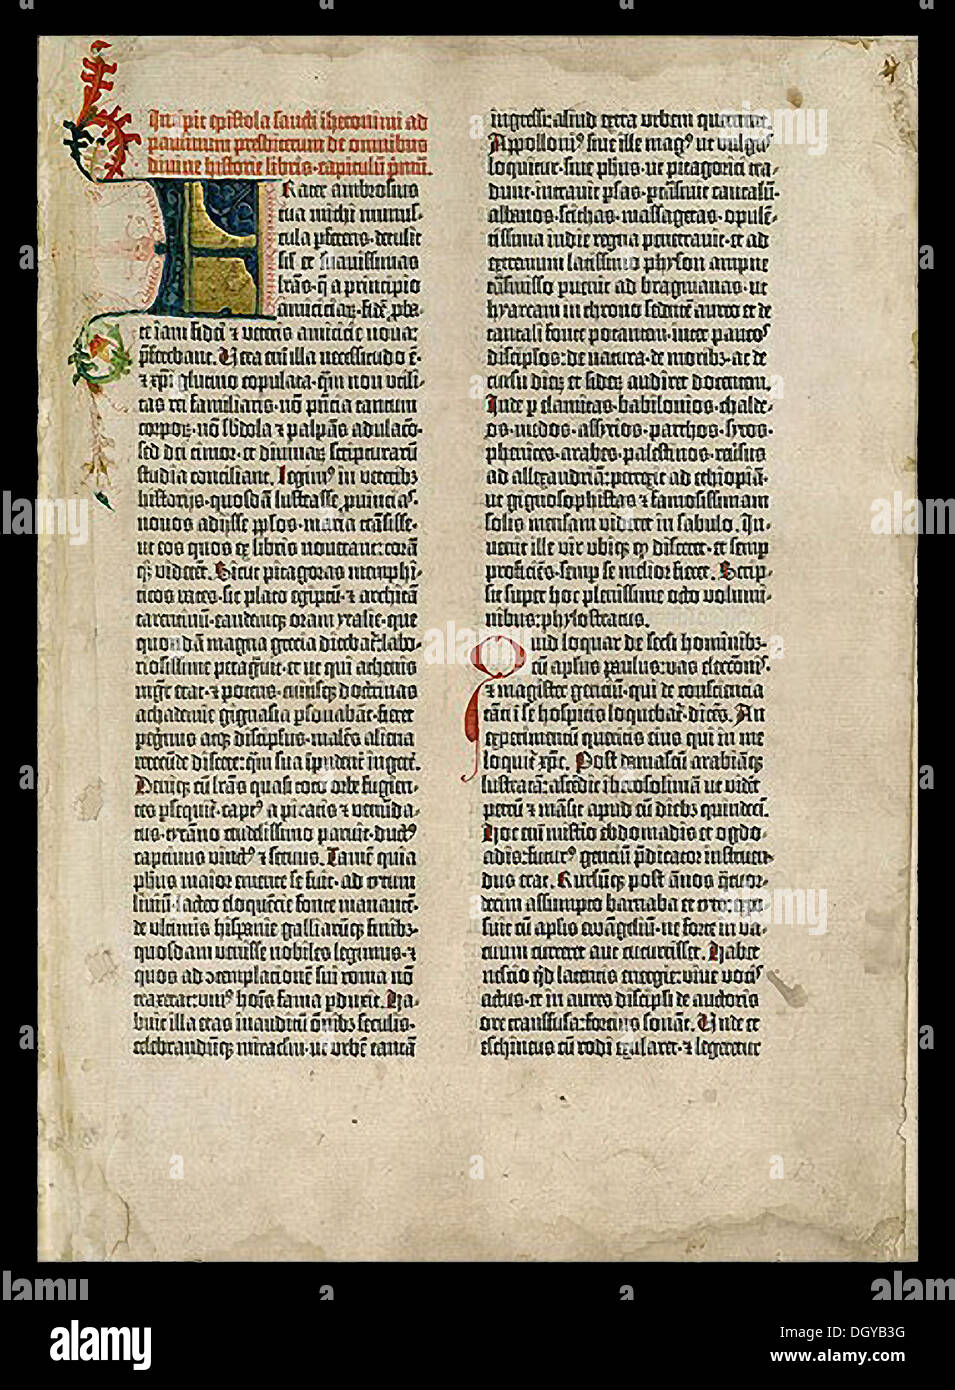 5525 die Gutenberg-Bibel war das erste große Buch mit einer beweglichen Druckmaschine bedruckt. Johanes Gutenberg war der Erfinder in Mainz, Deutschland im Jahre 1450 Stockfoto